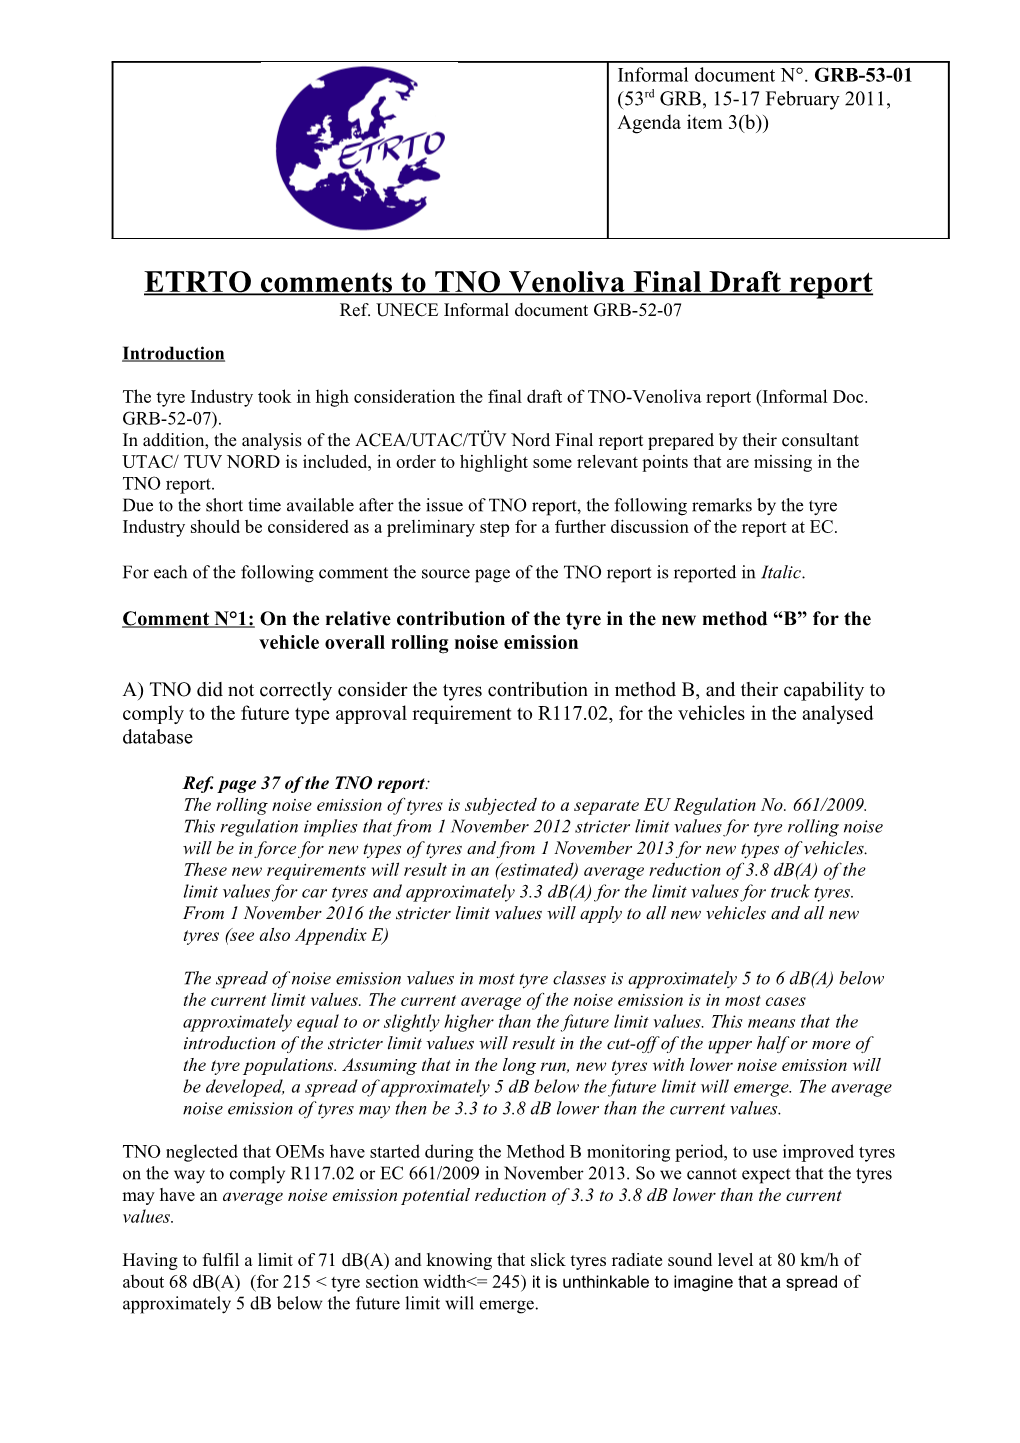 ETRTO Answer to TNO Venoliva Report Addressed to EC